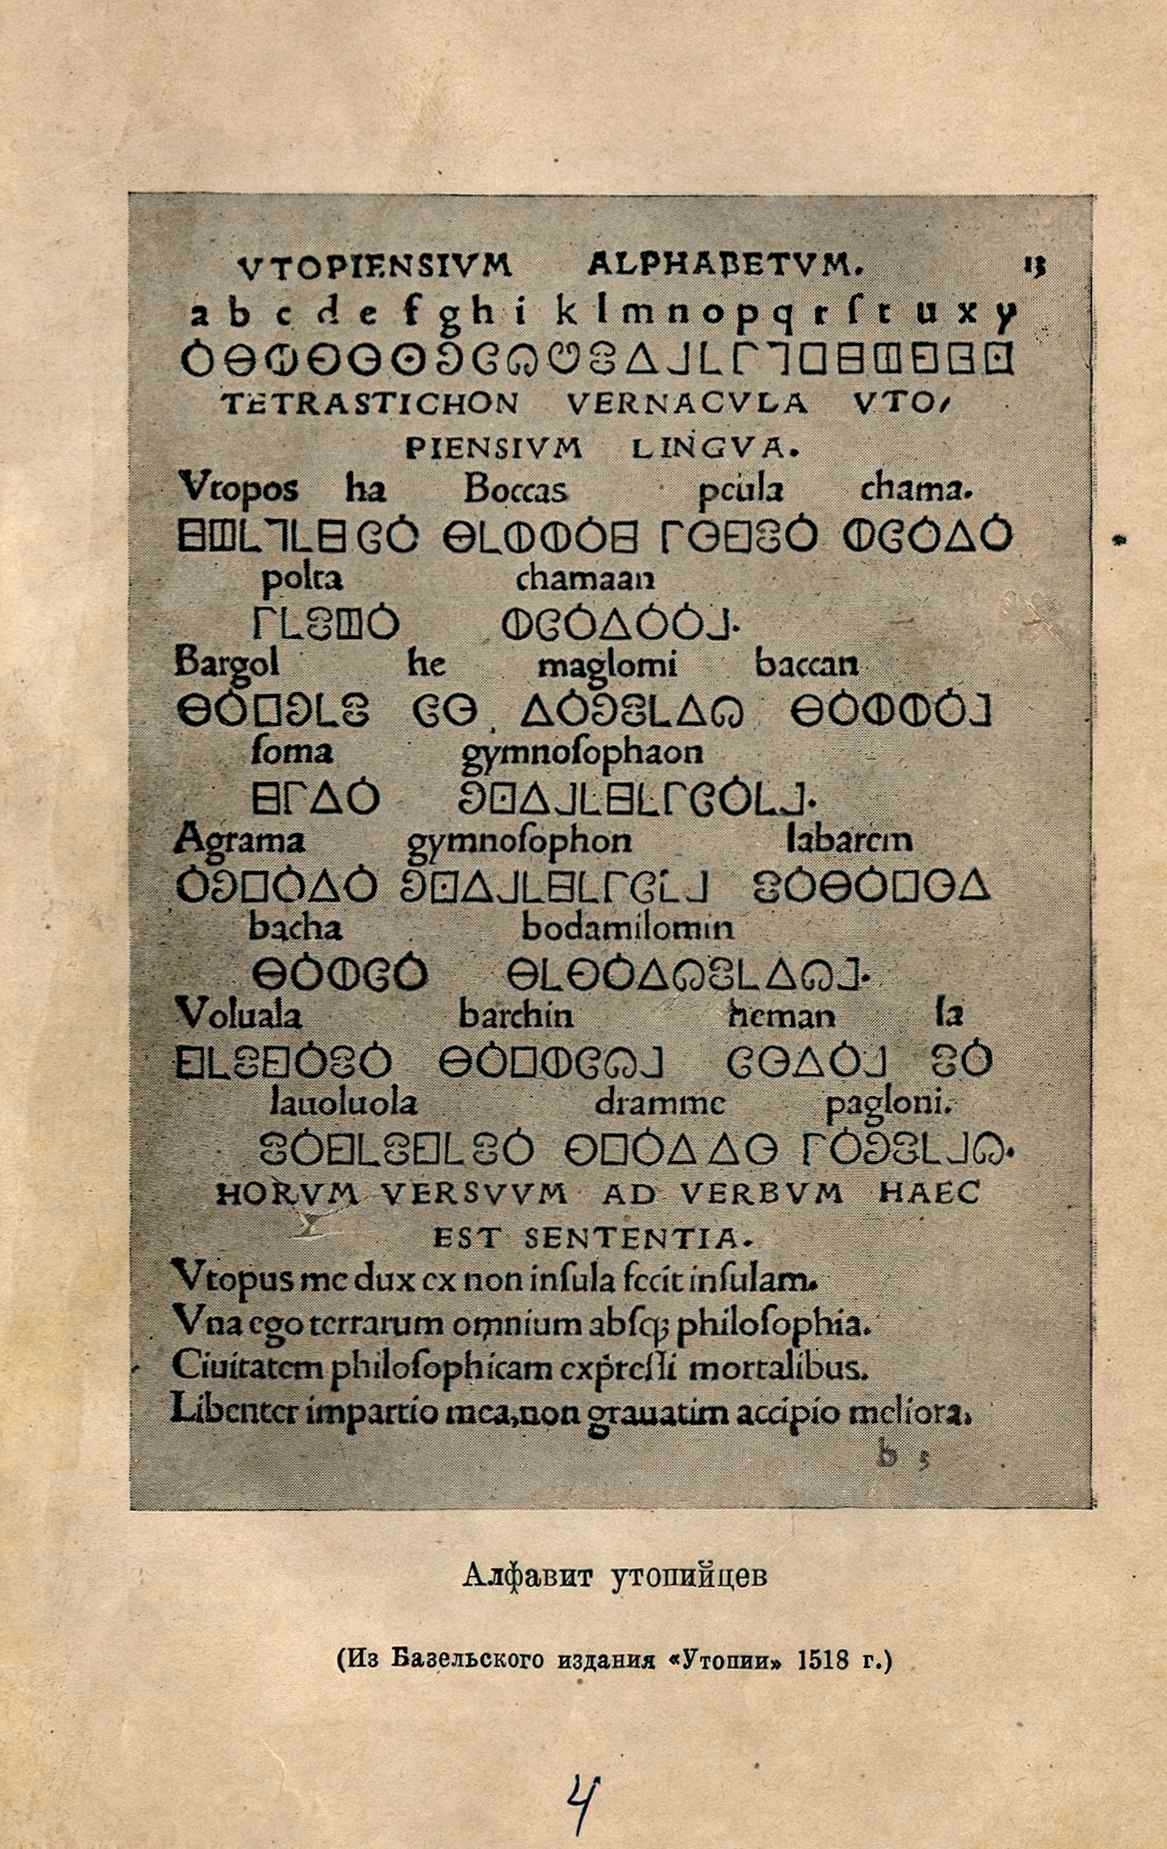 Алфавит утопийцев (из базельского издания „Утопии“ 1513 г.)